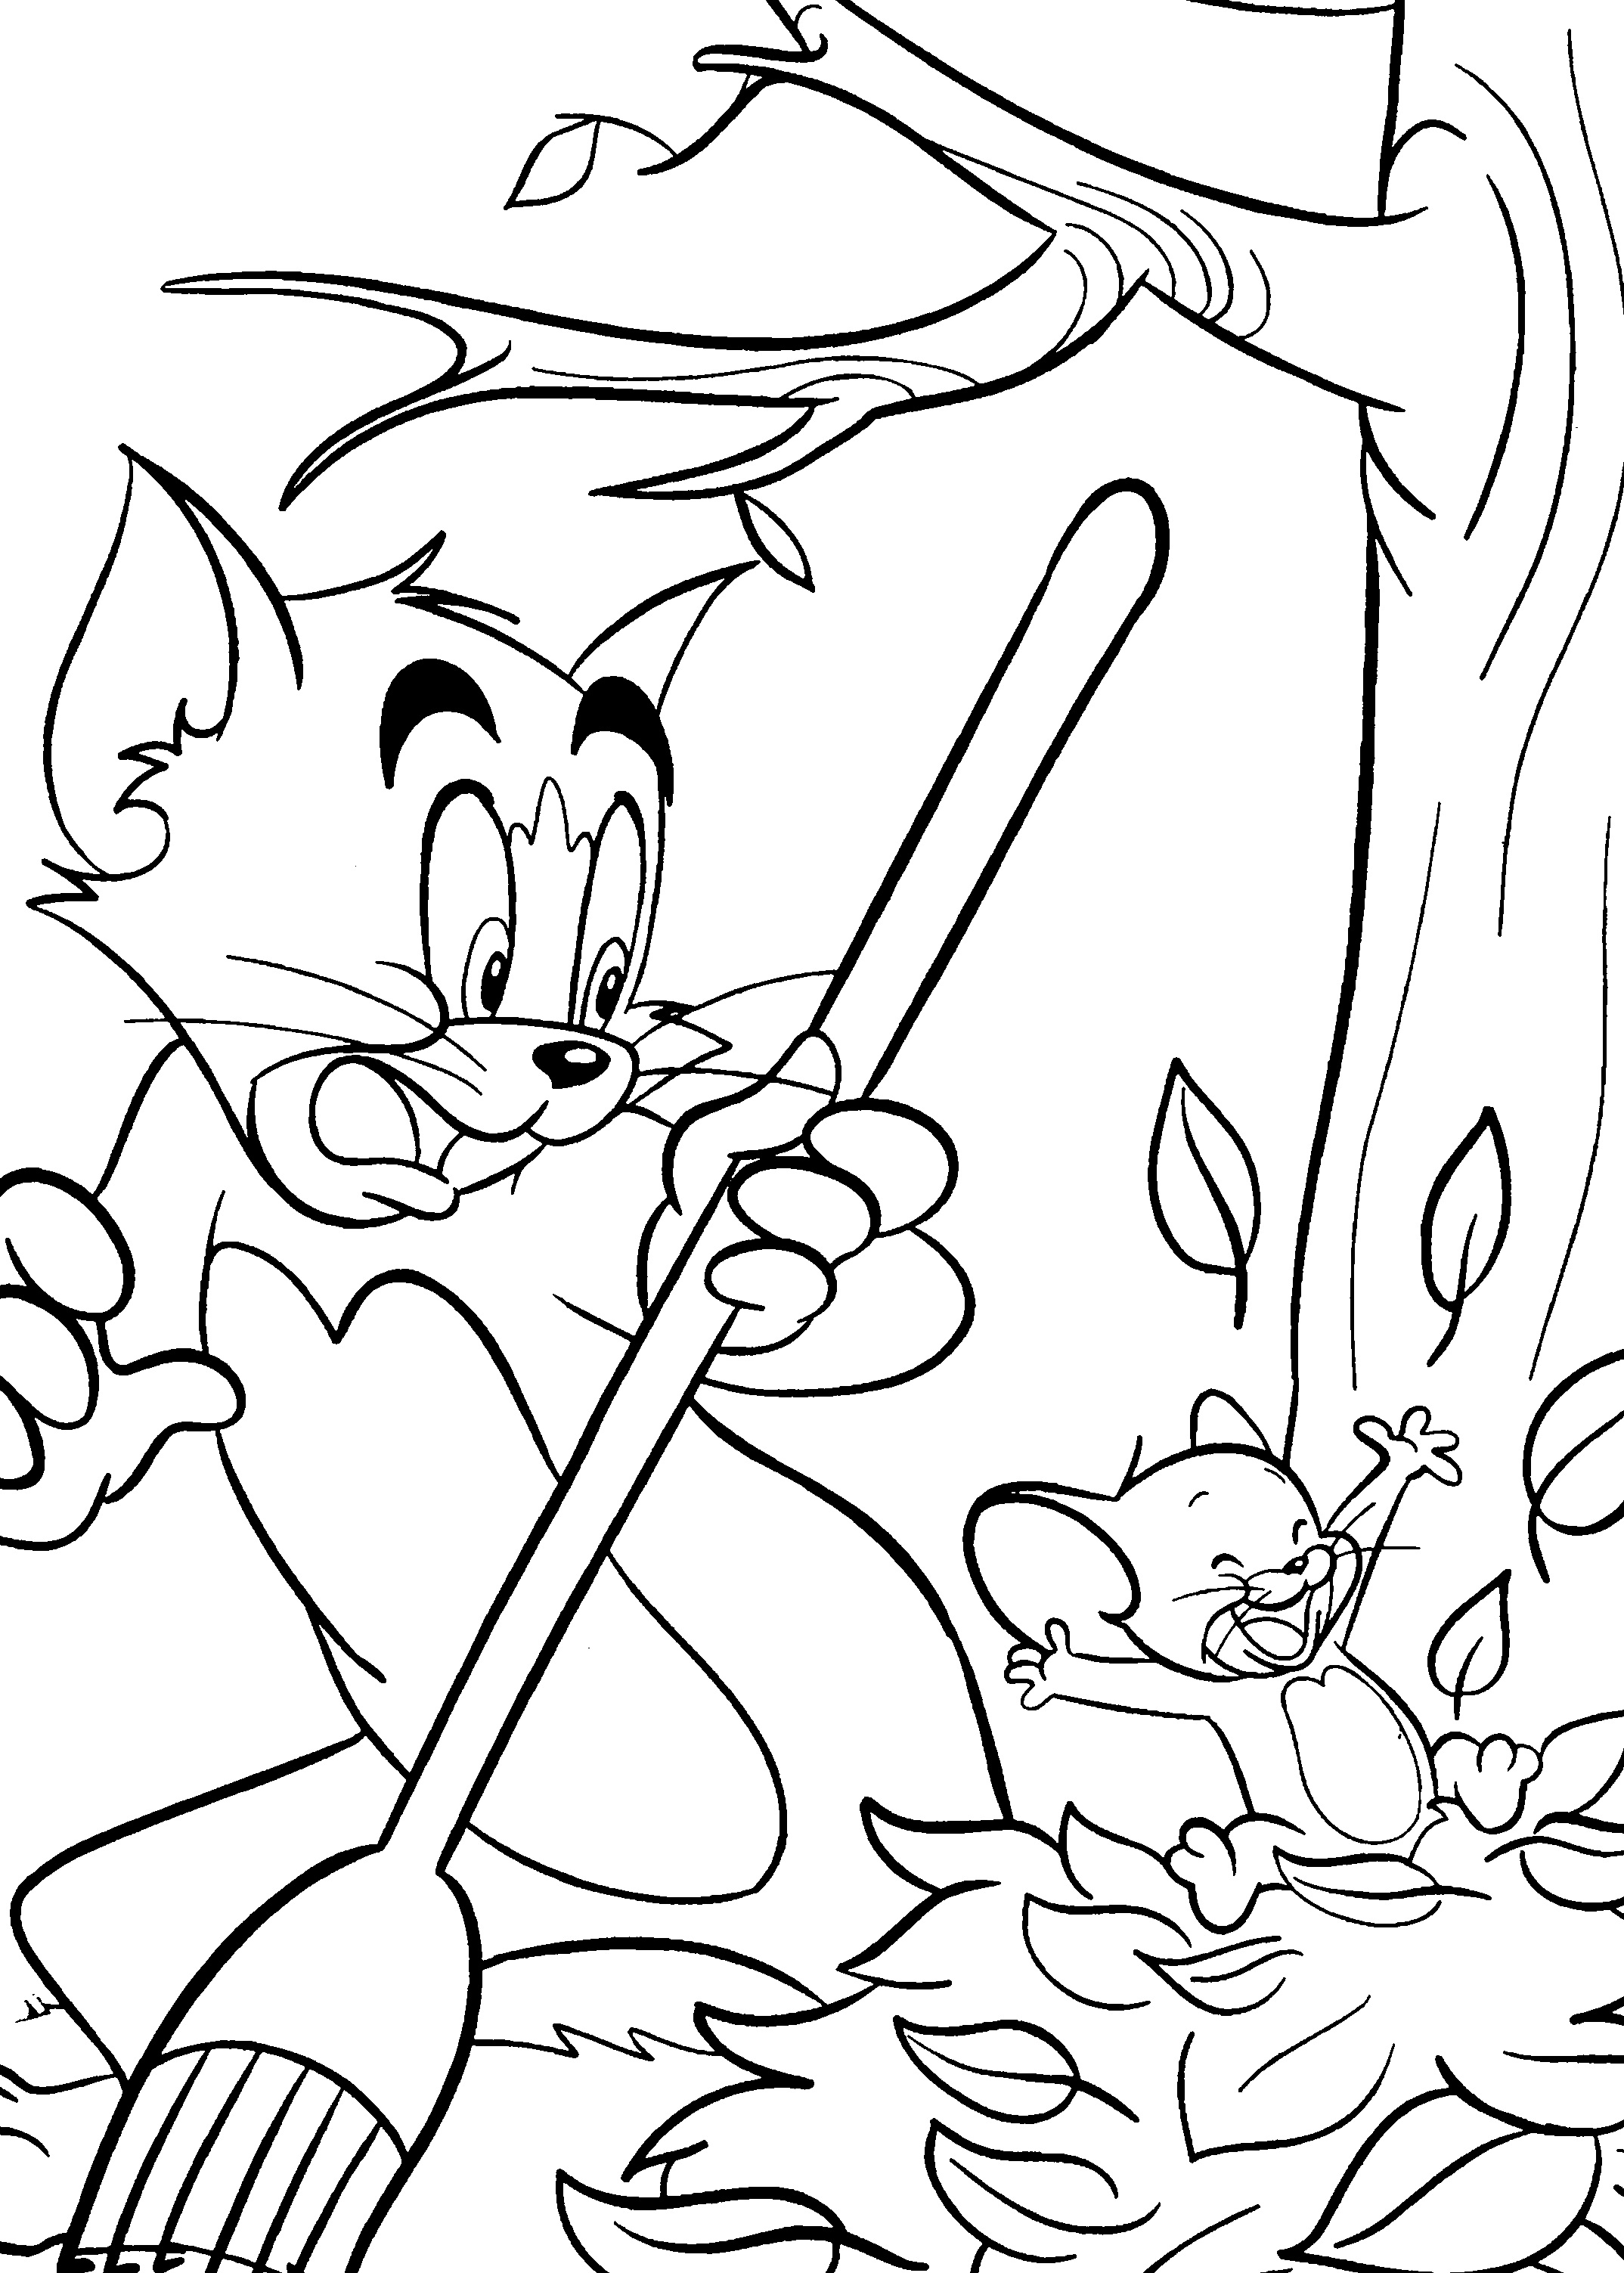 La raccolta delle foglie con Tom and Jerry